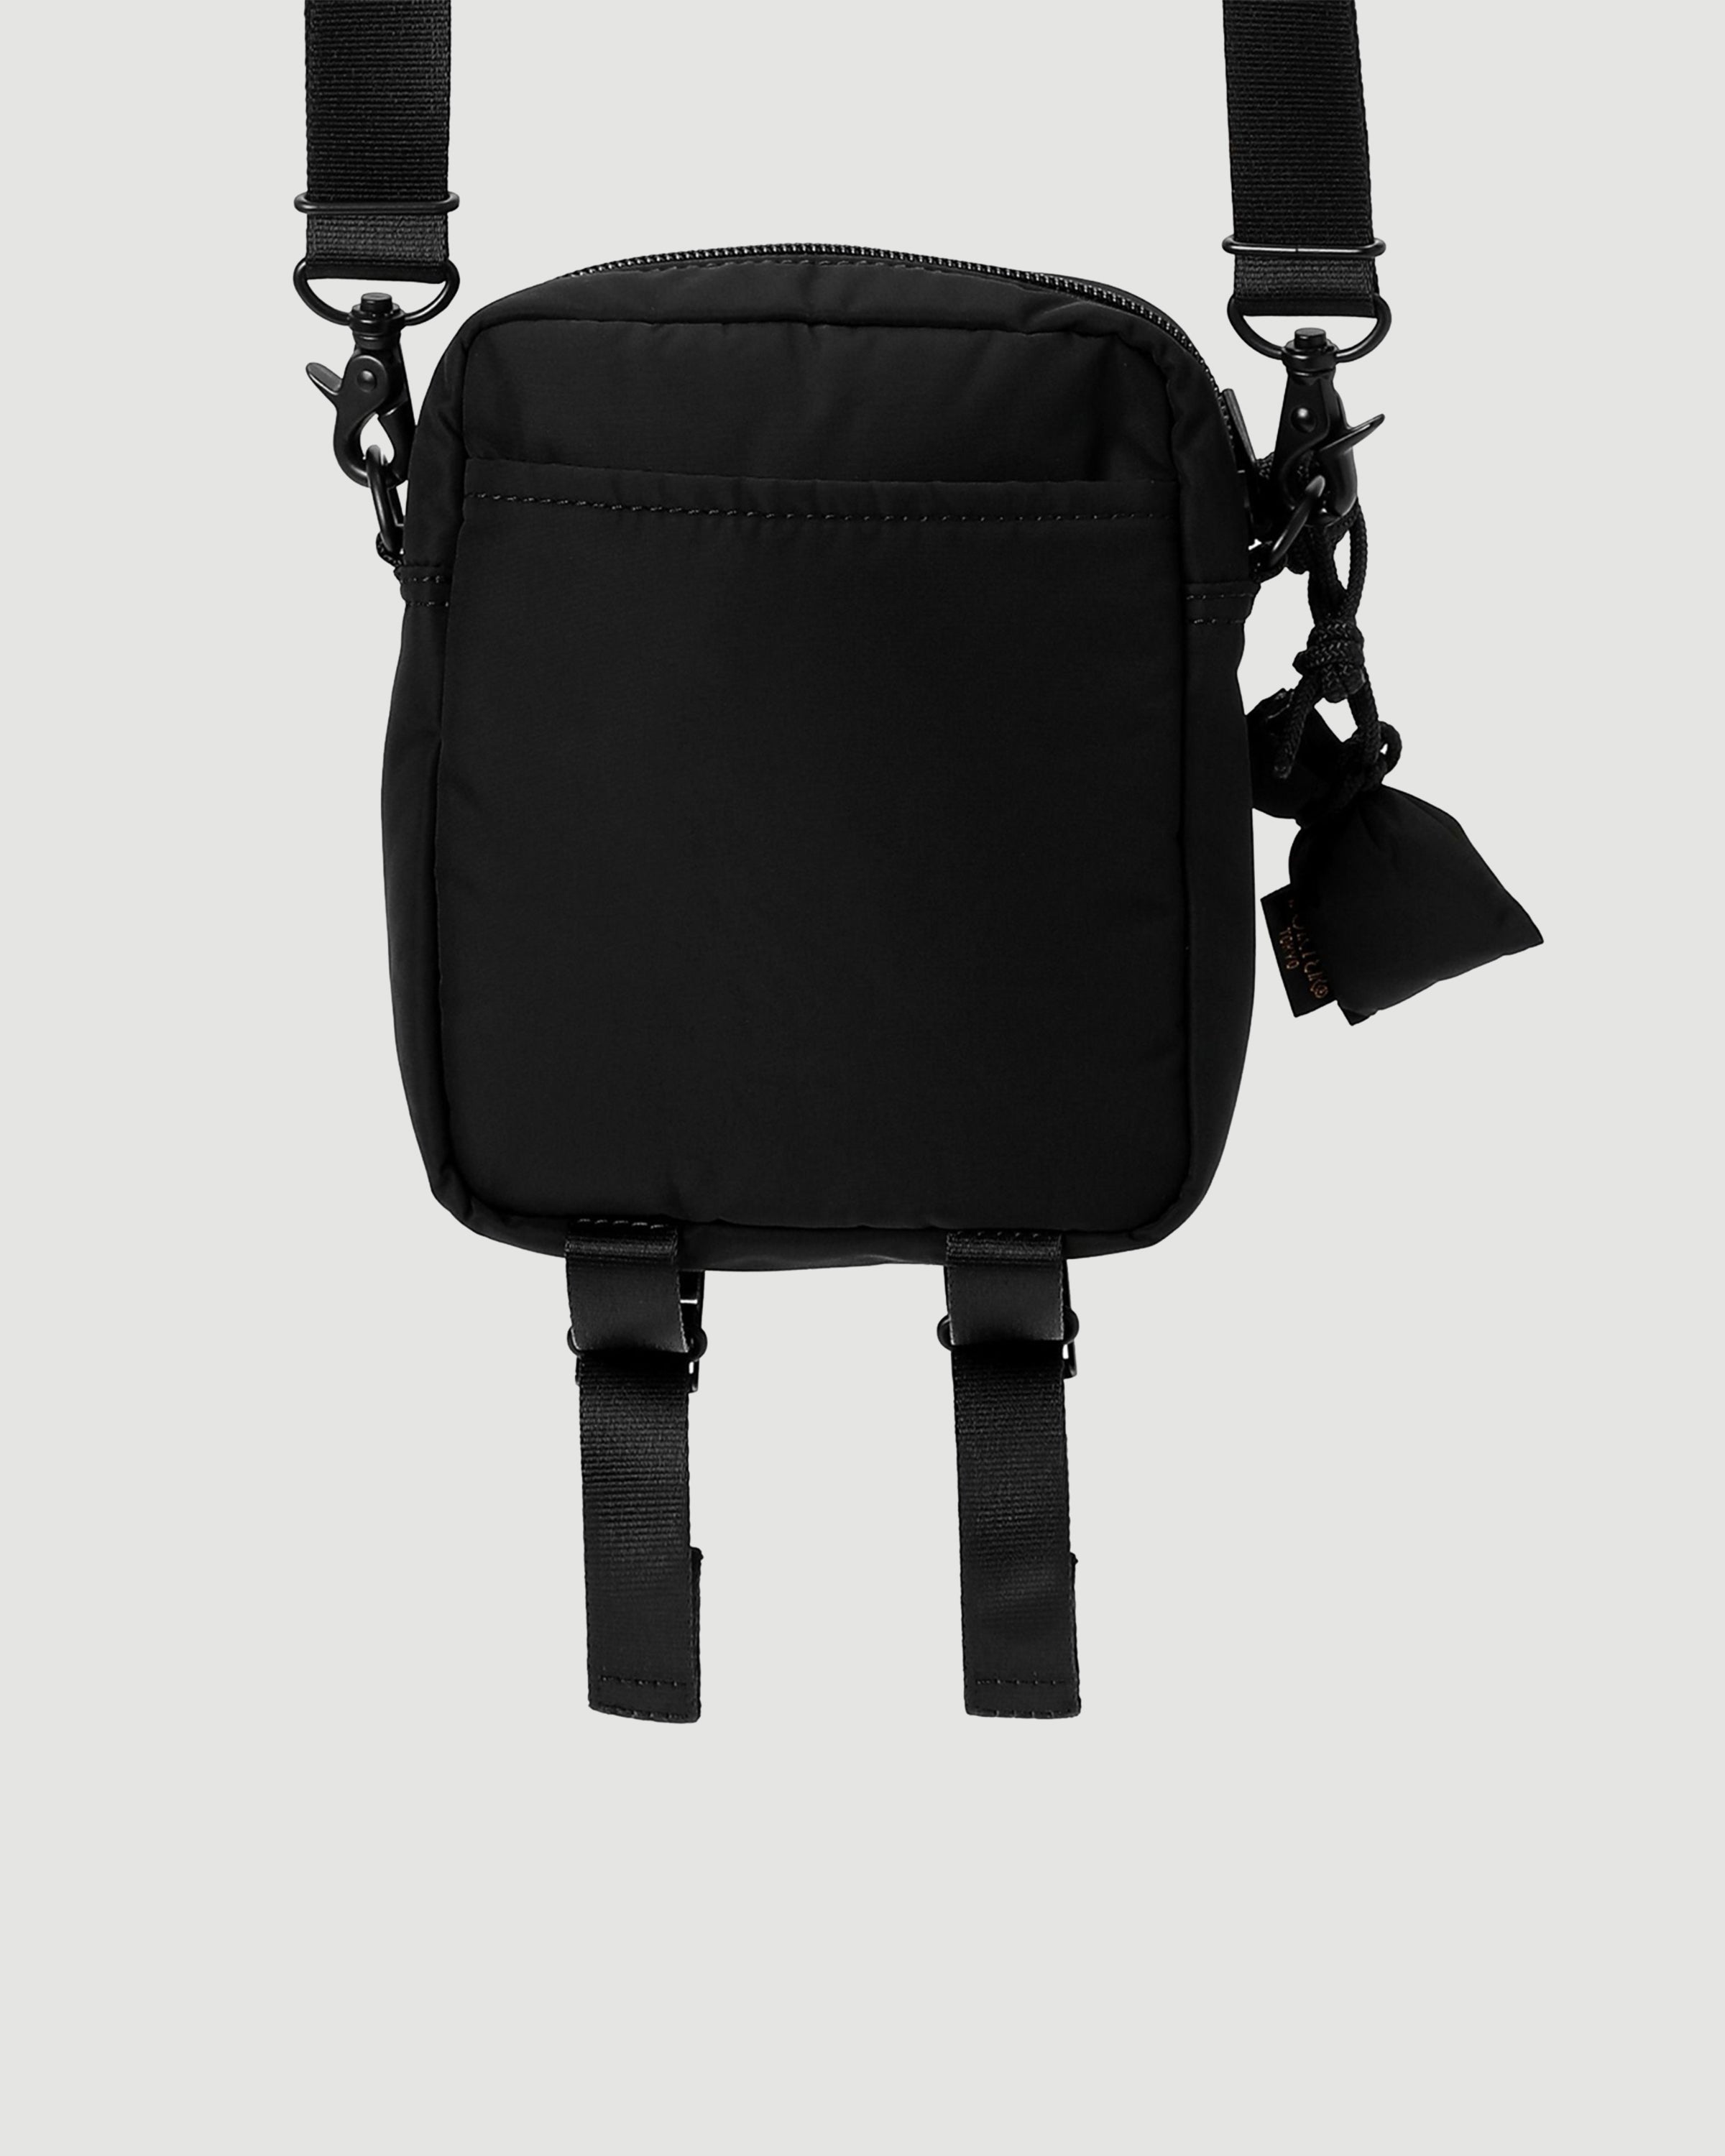 Porter Yoshida – Senses Vertical Shoulder Bag Black – Tenue de Nîmes